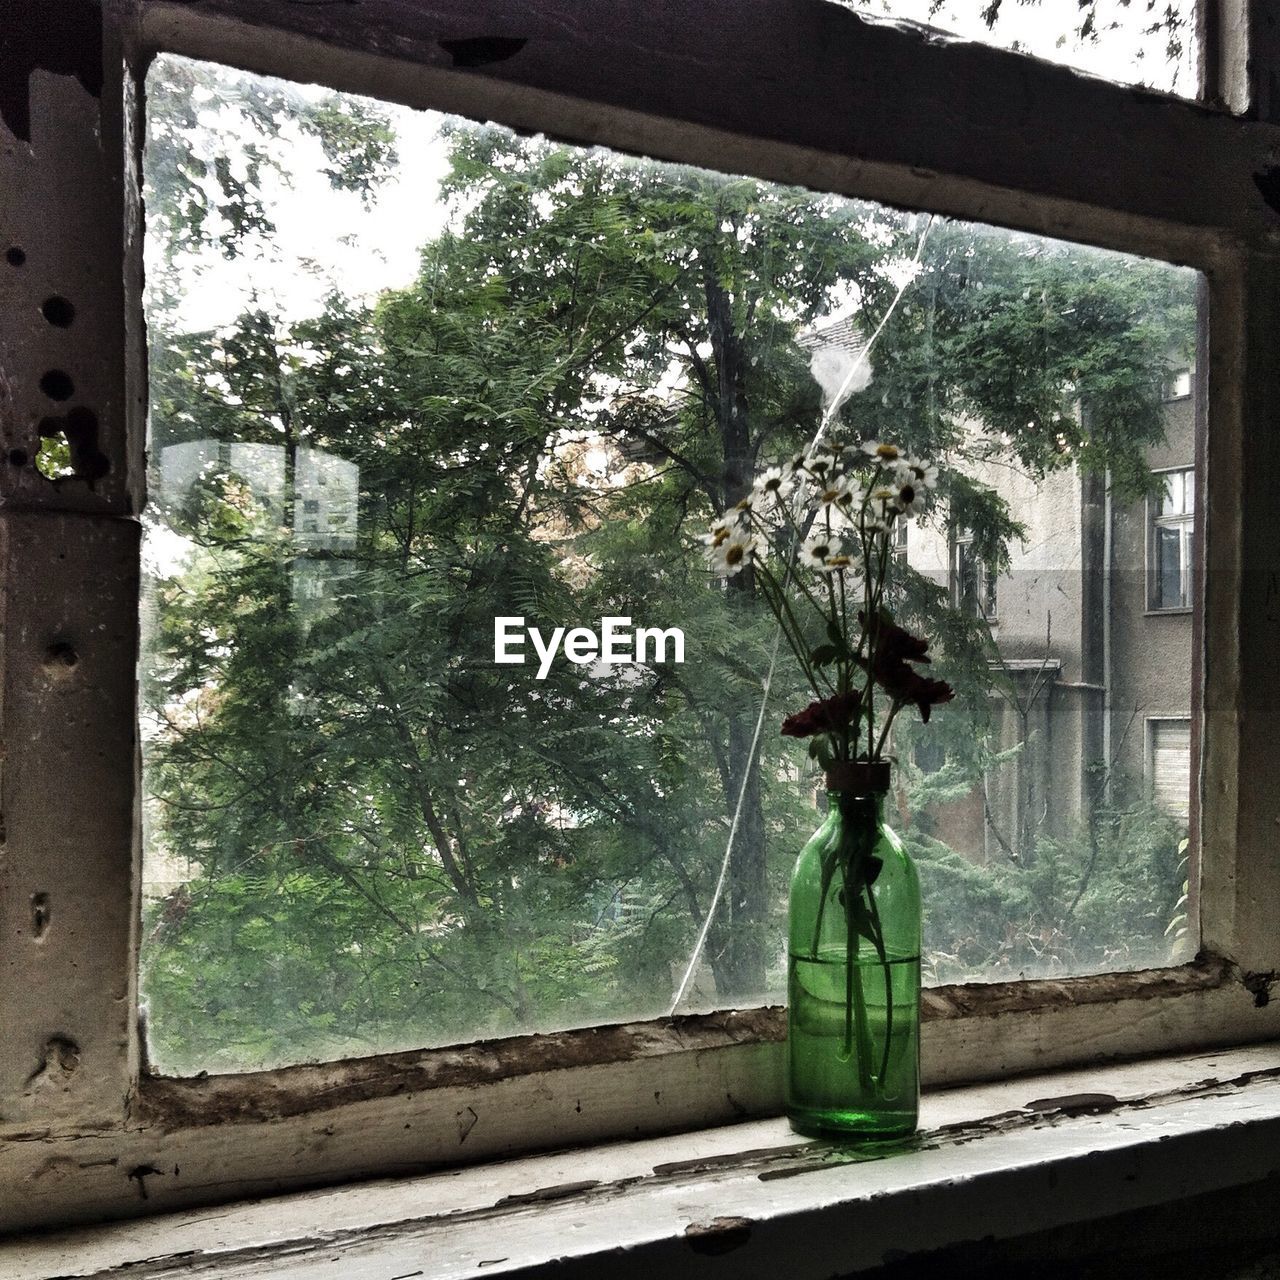 Flower vase on old window sill